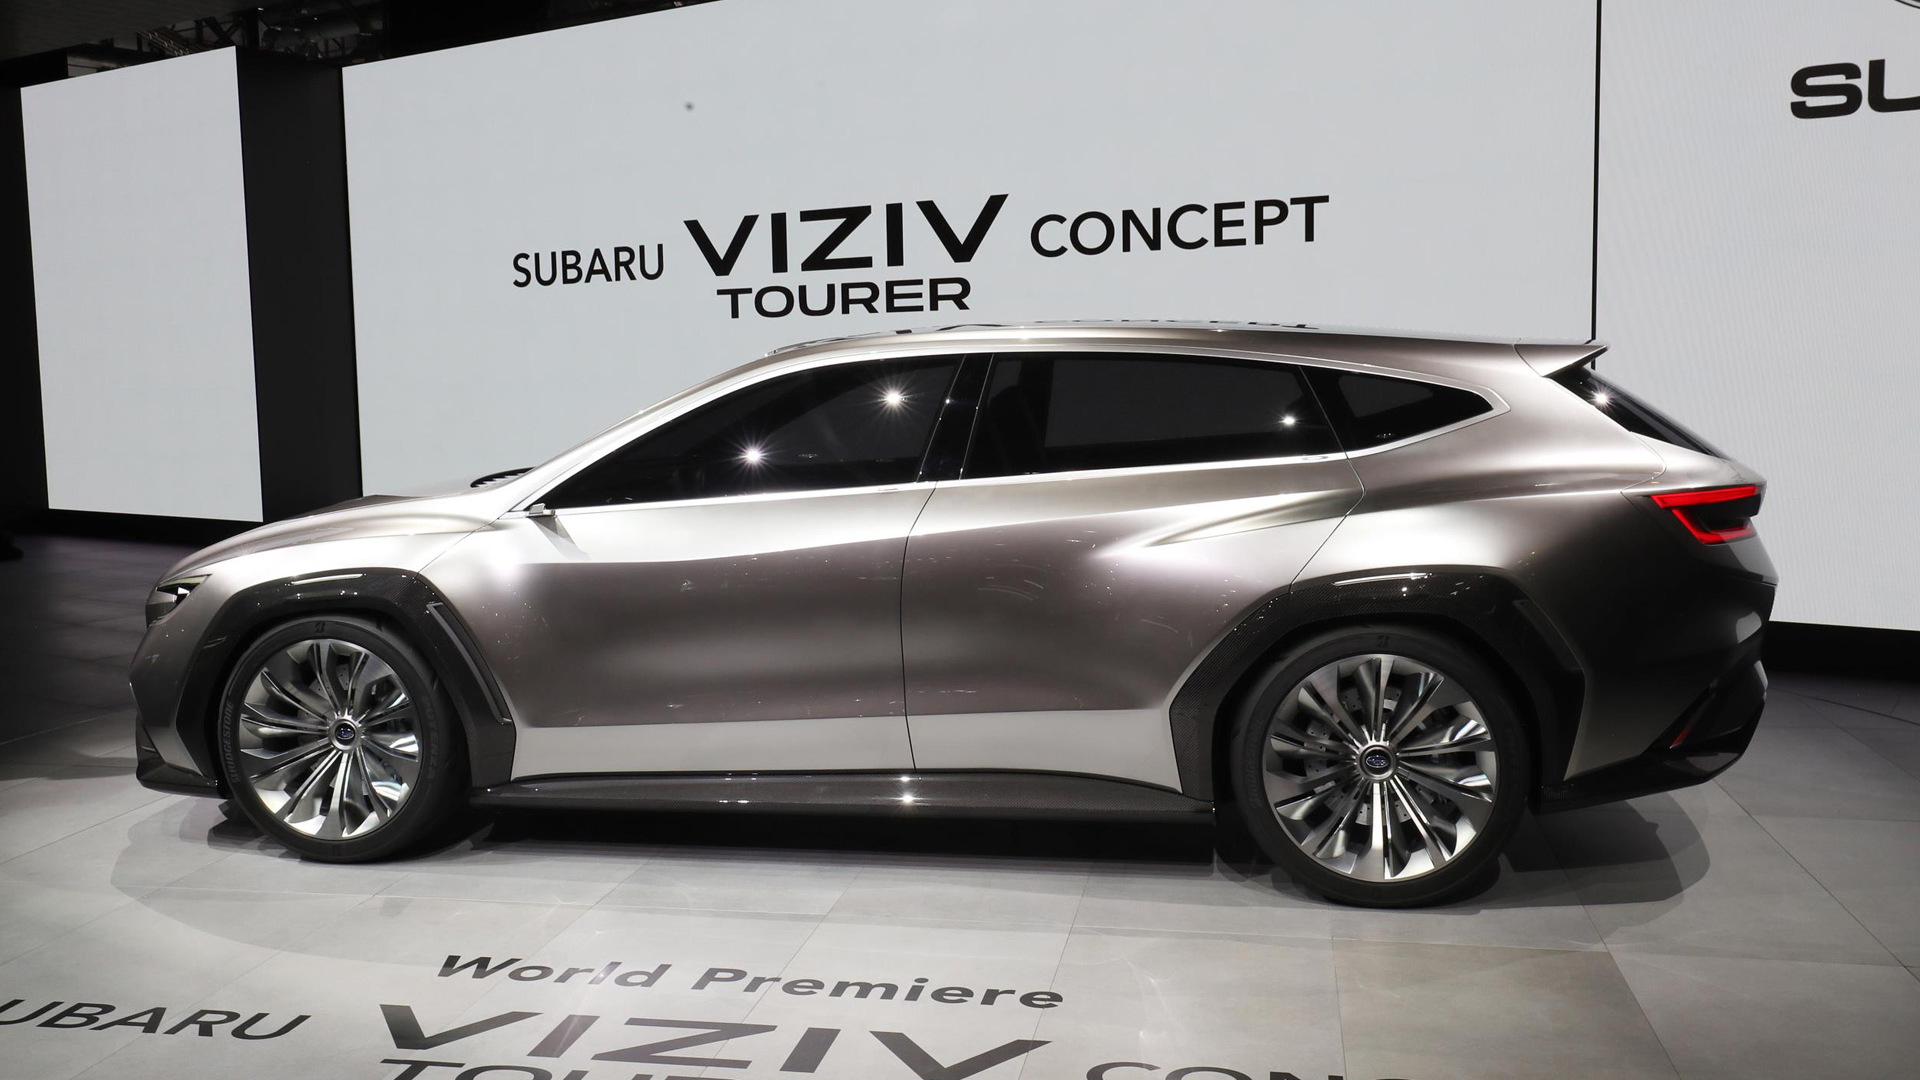 Subaru Viziv Tourer concept